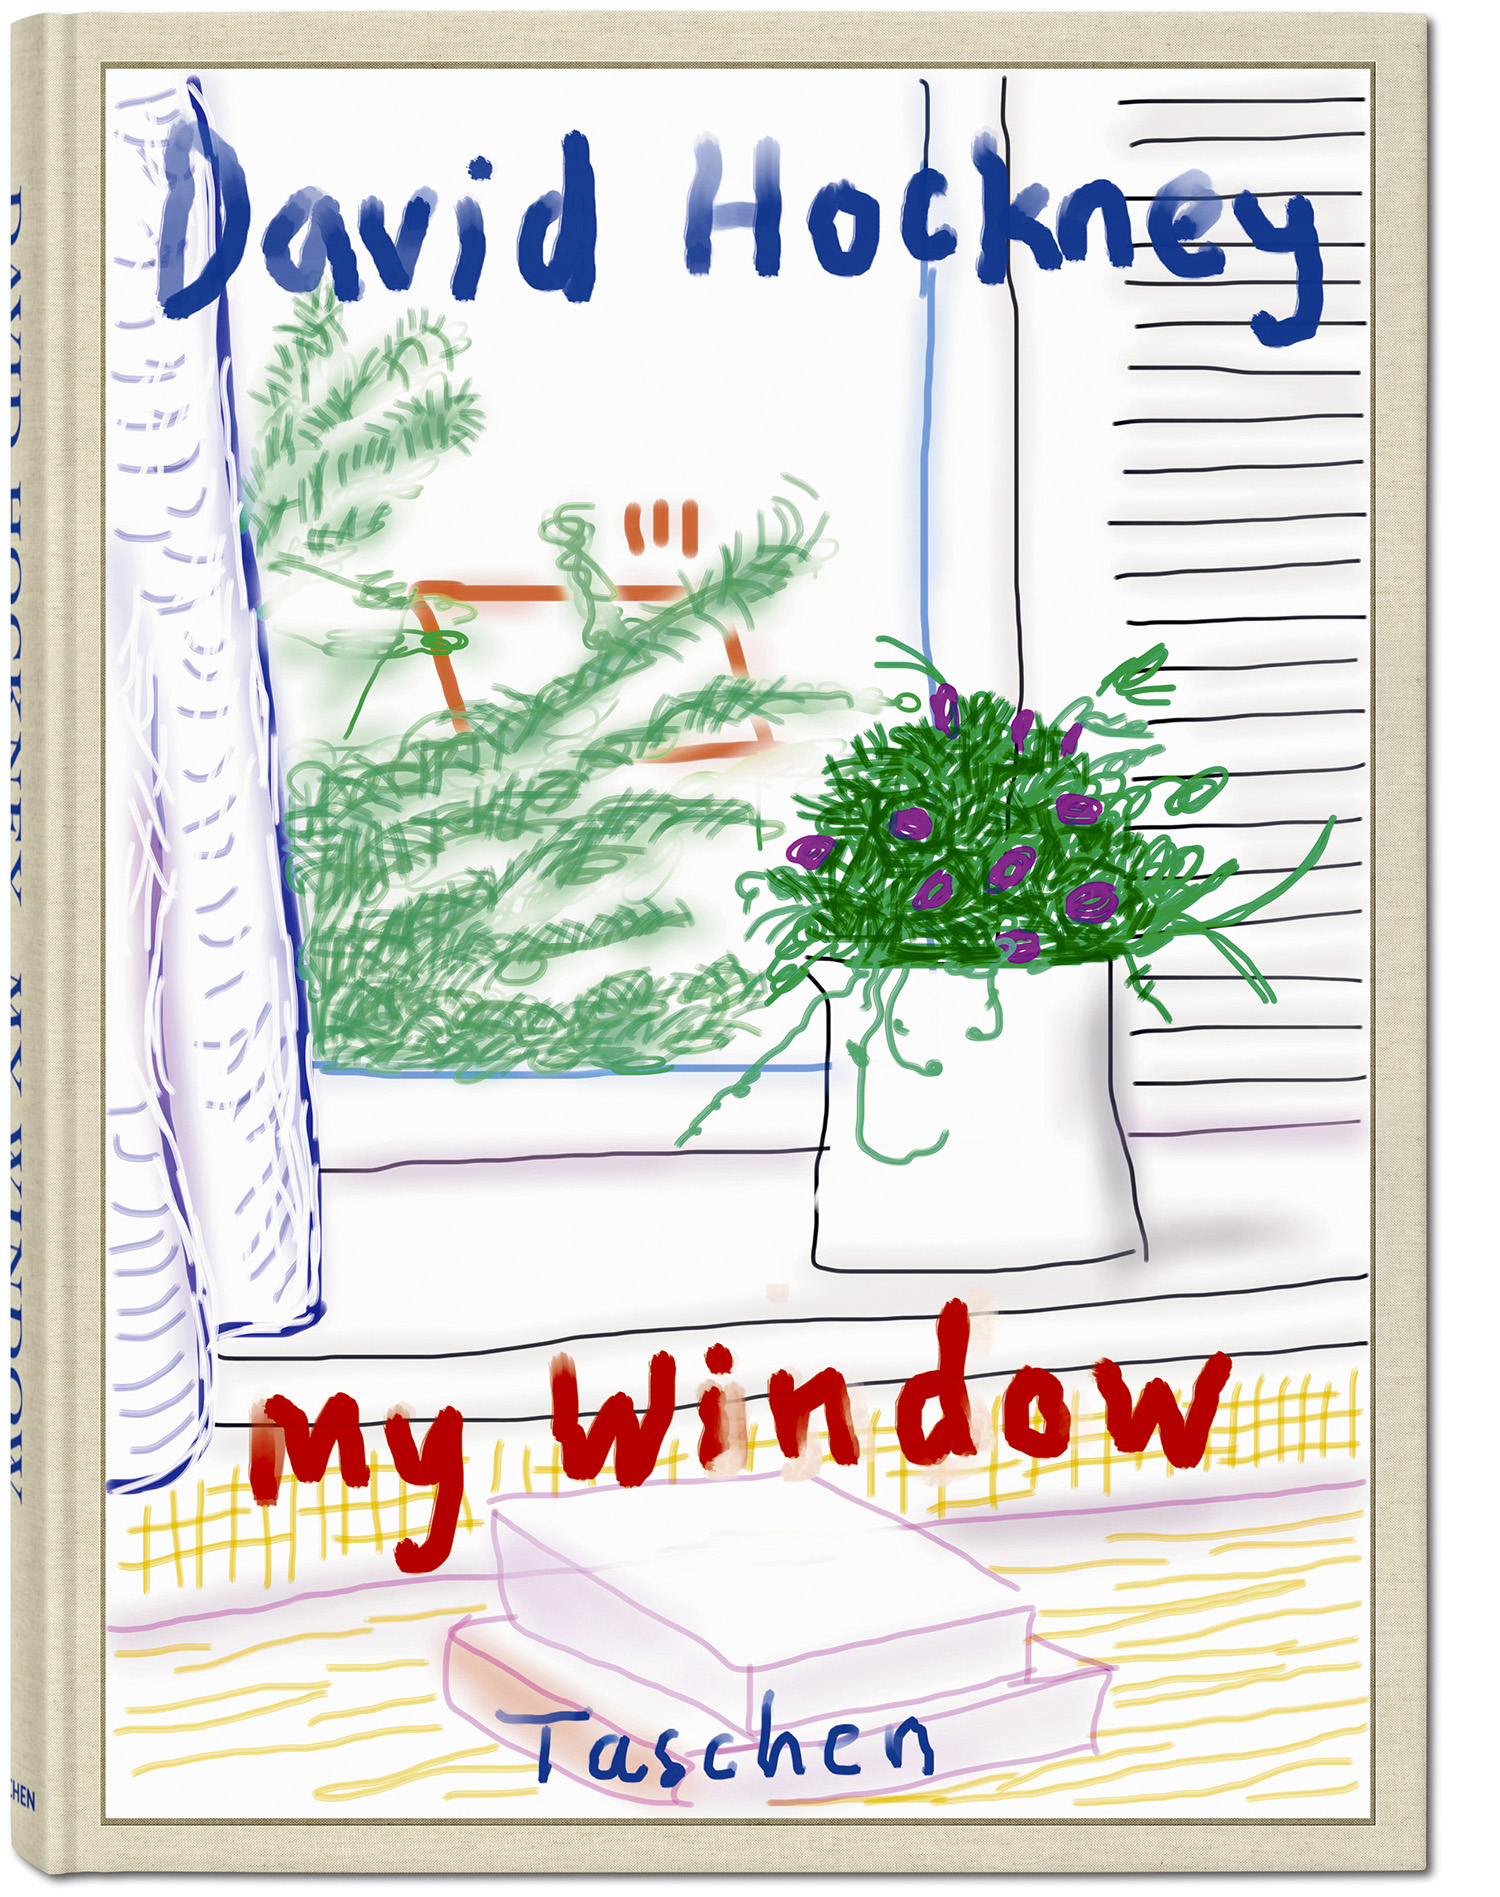 My Window, David Hockney, Taschen Verlag